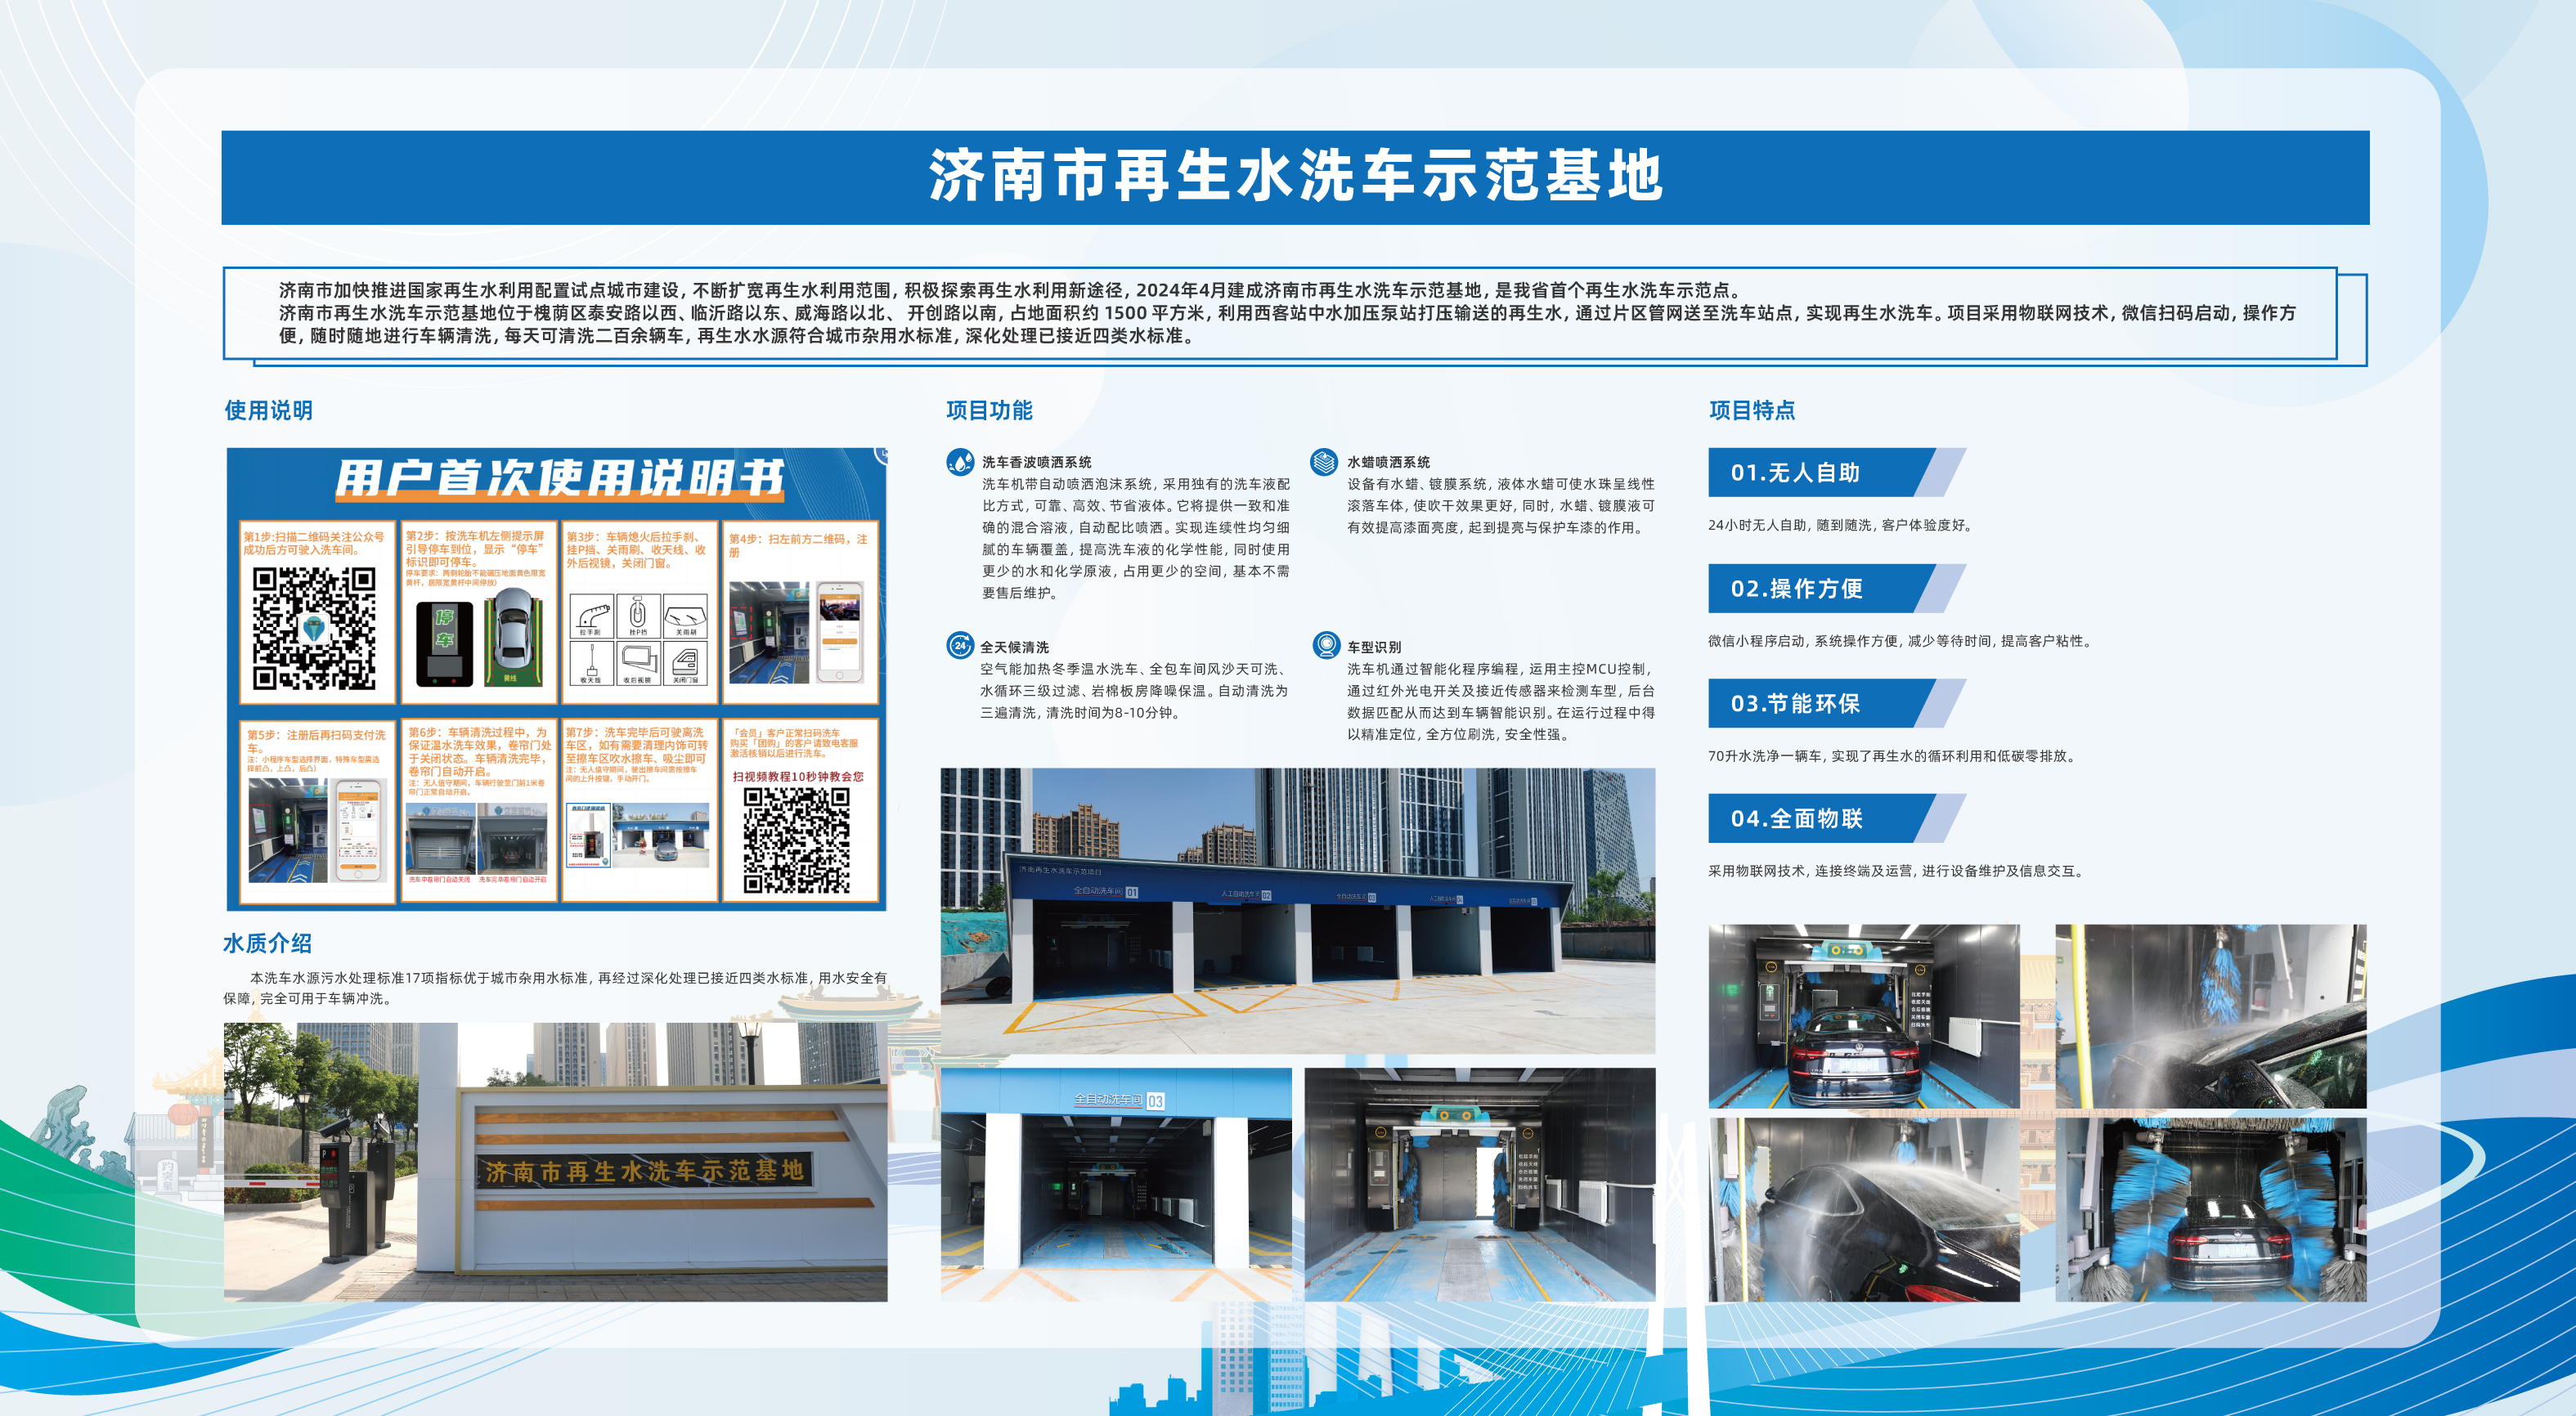 济南市建成全省首个再生水洗车示范基地